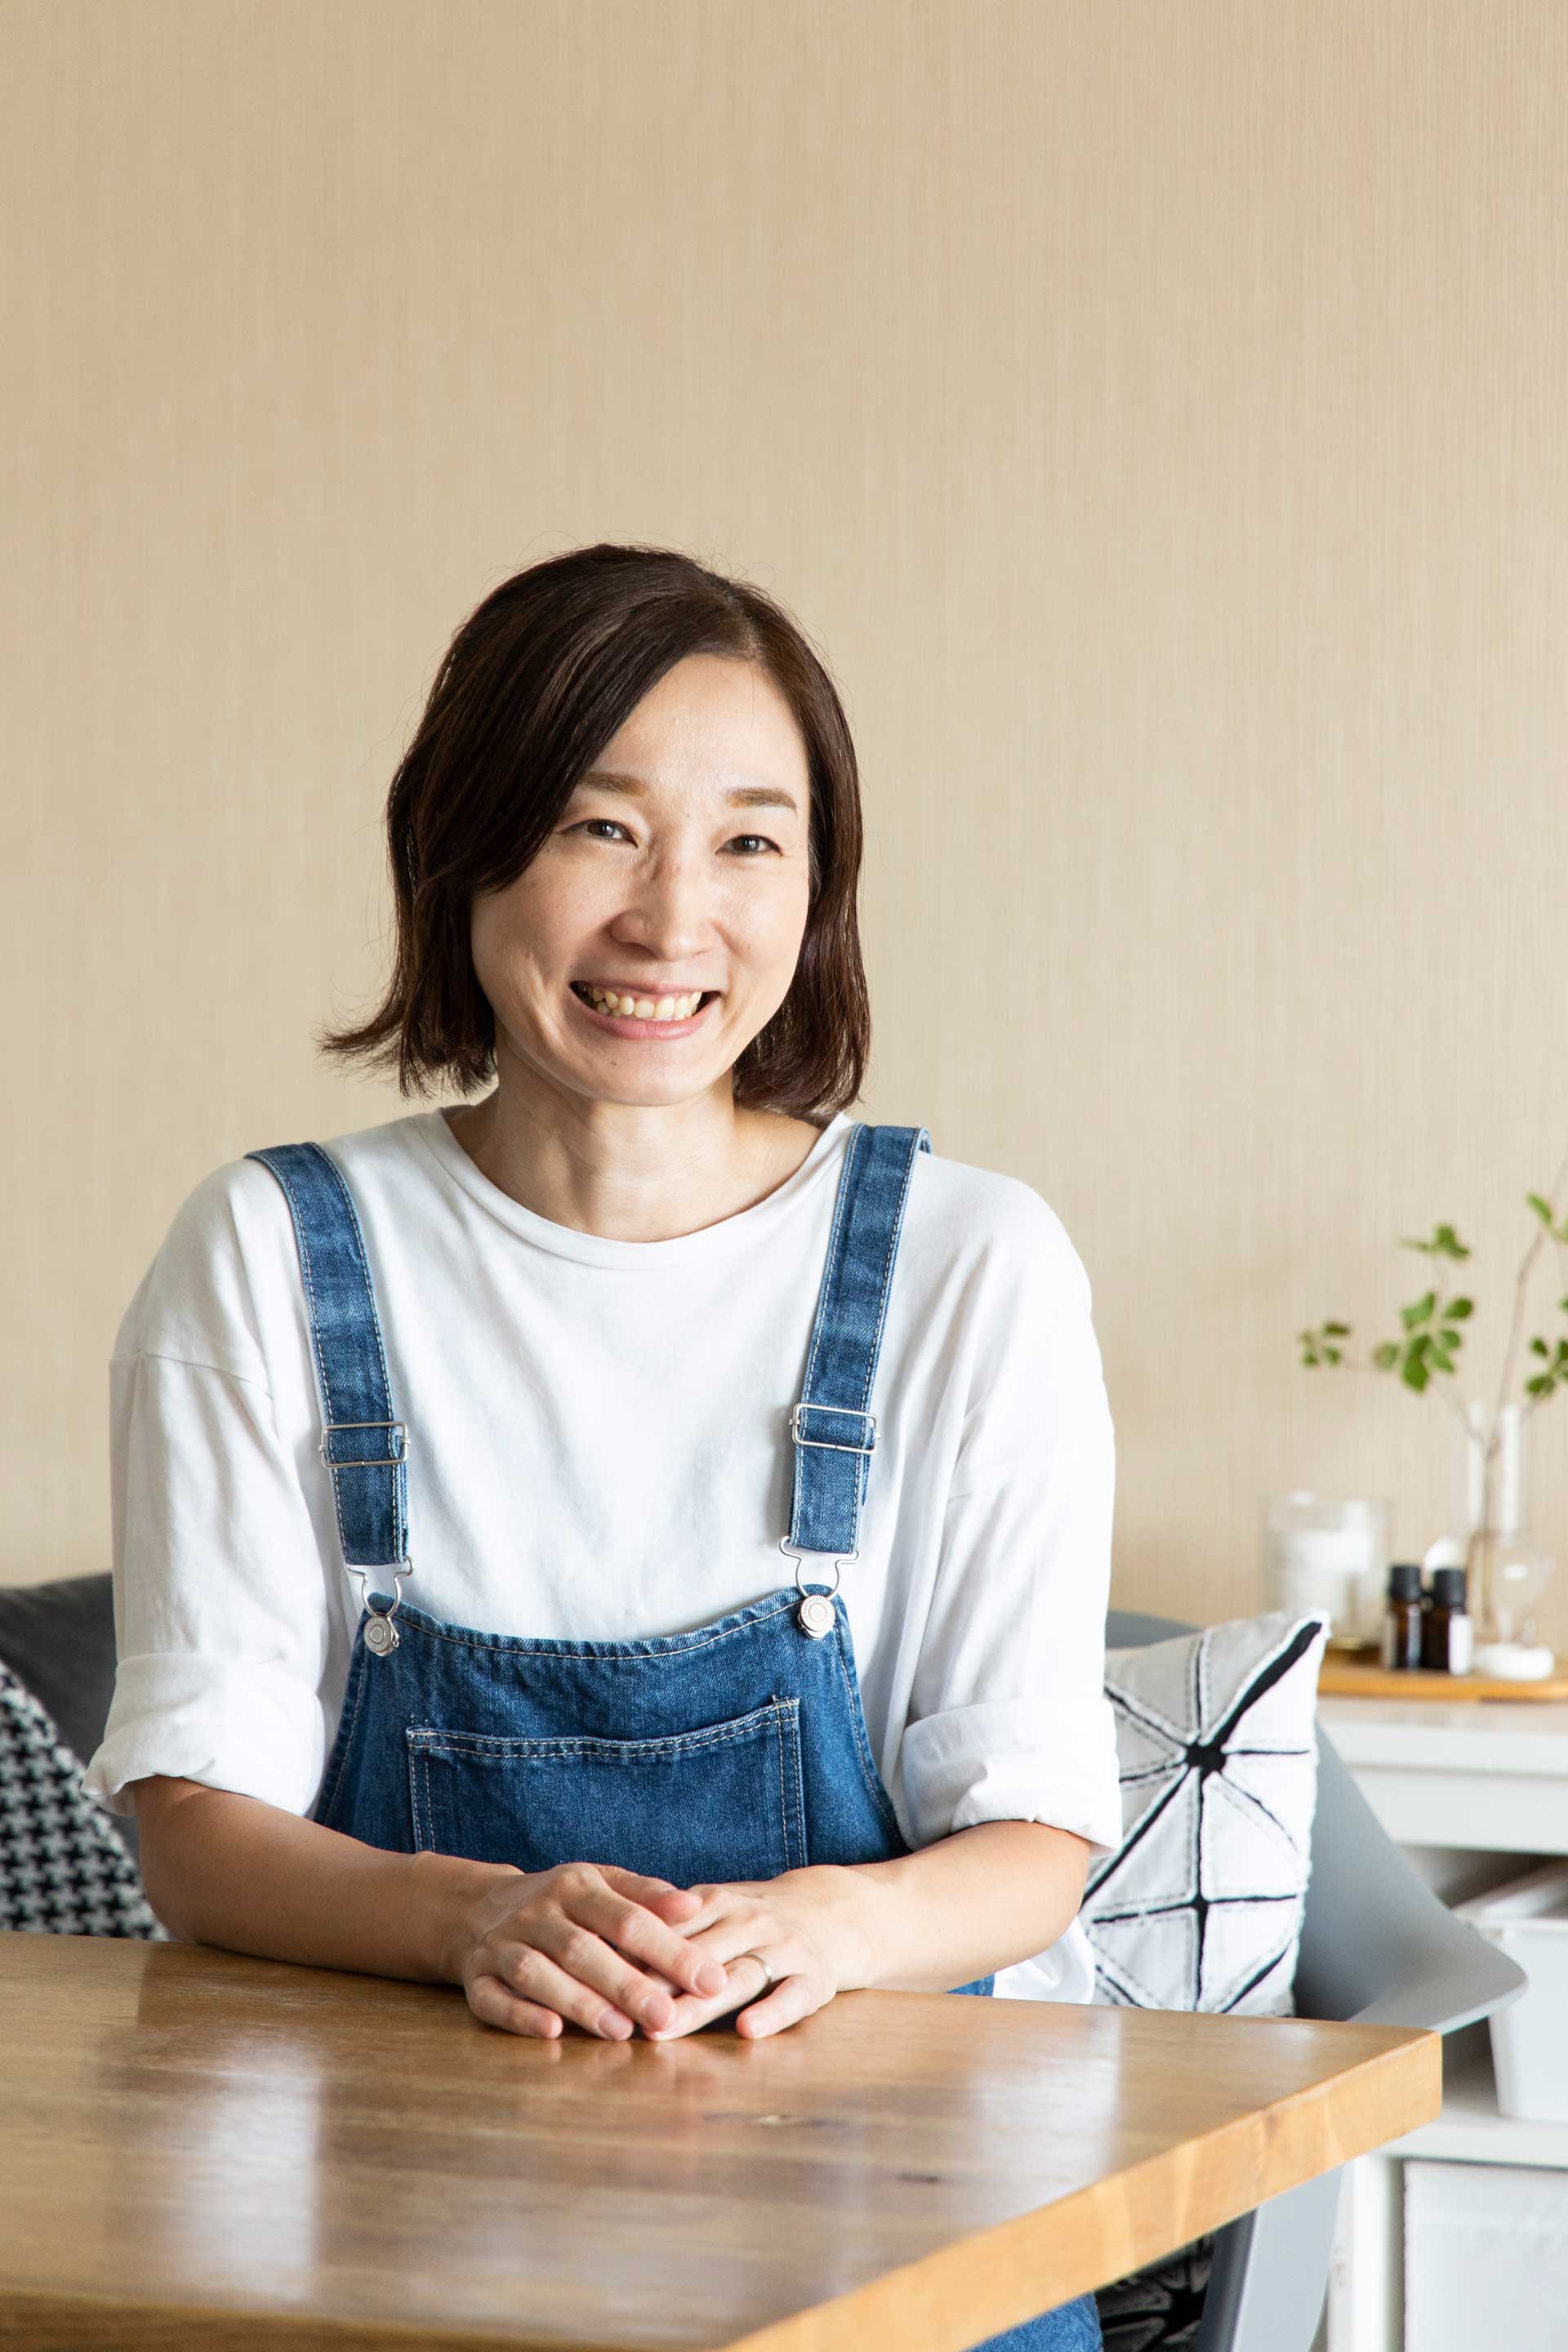 整理収納アドバイザー・親・子の片づけマスターインストラクターの髙瀬清江さん。整理収納サポートやインテリアアドバイス、親・子の片づけ講座、ワークショップなどを行っている。インスタグラム「kiyo_home」が人気。